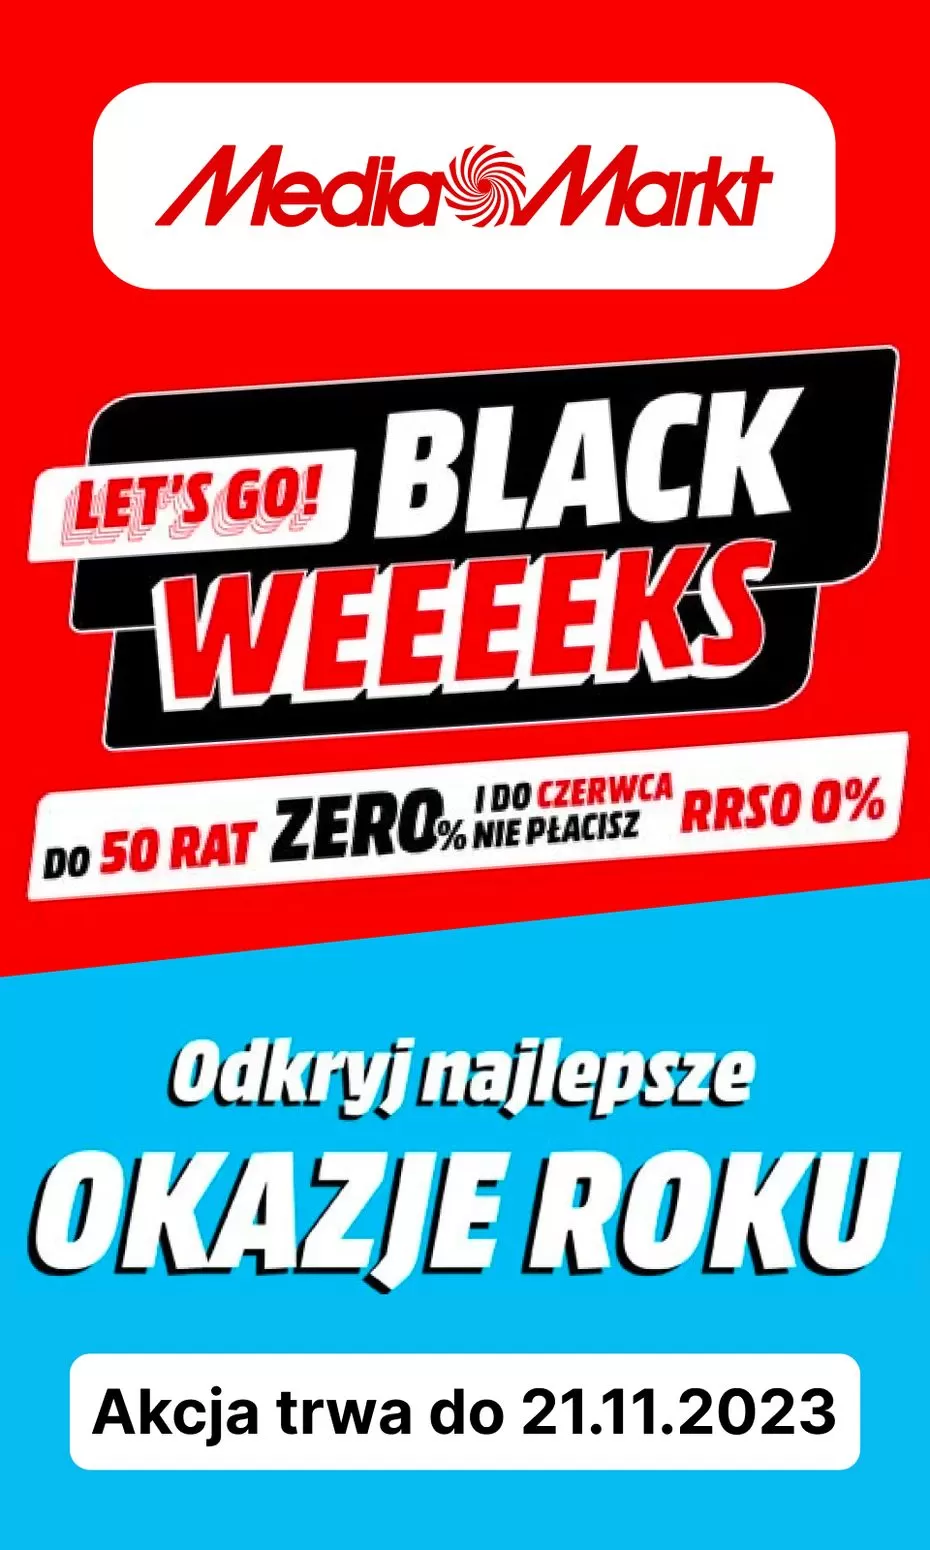 Lets go! Black weeeeks - Media Markt Gazetka promocyjna - W tym tygodniu - oferta 'brak'